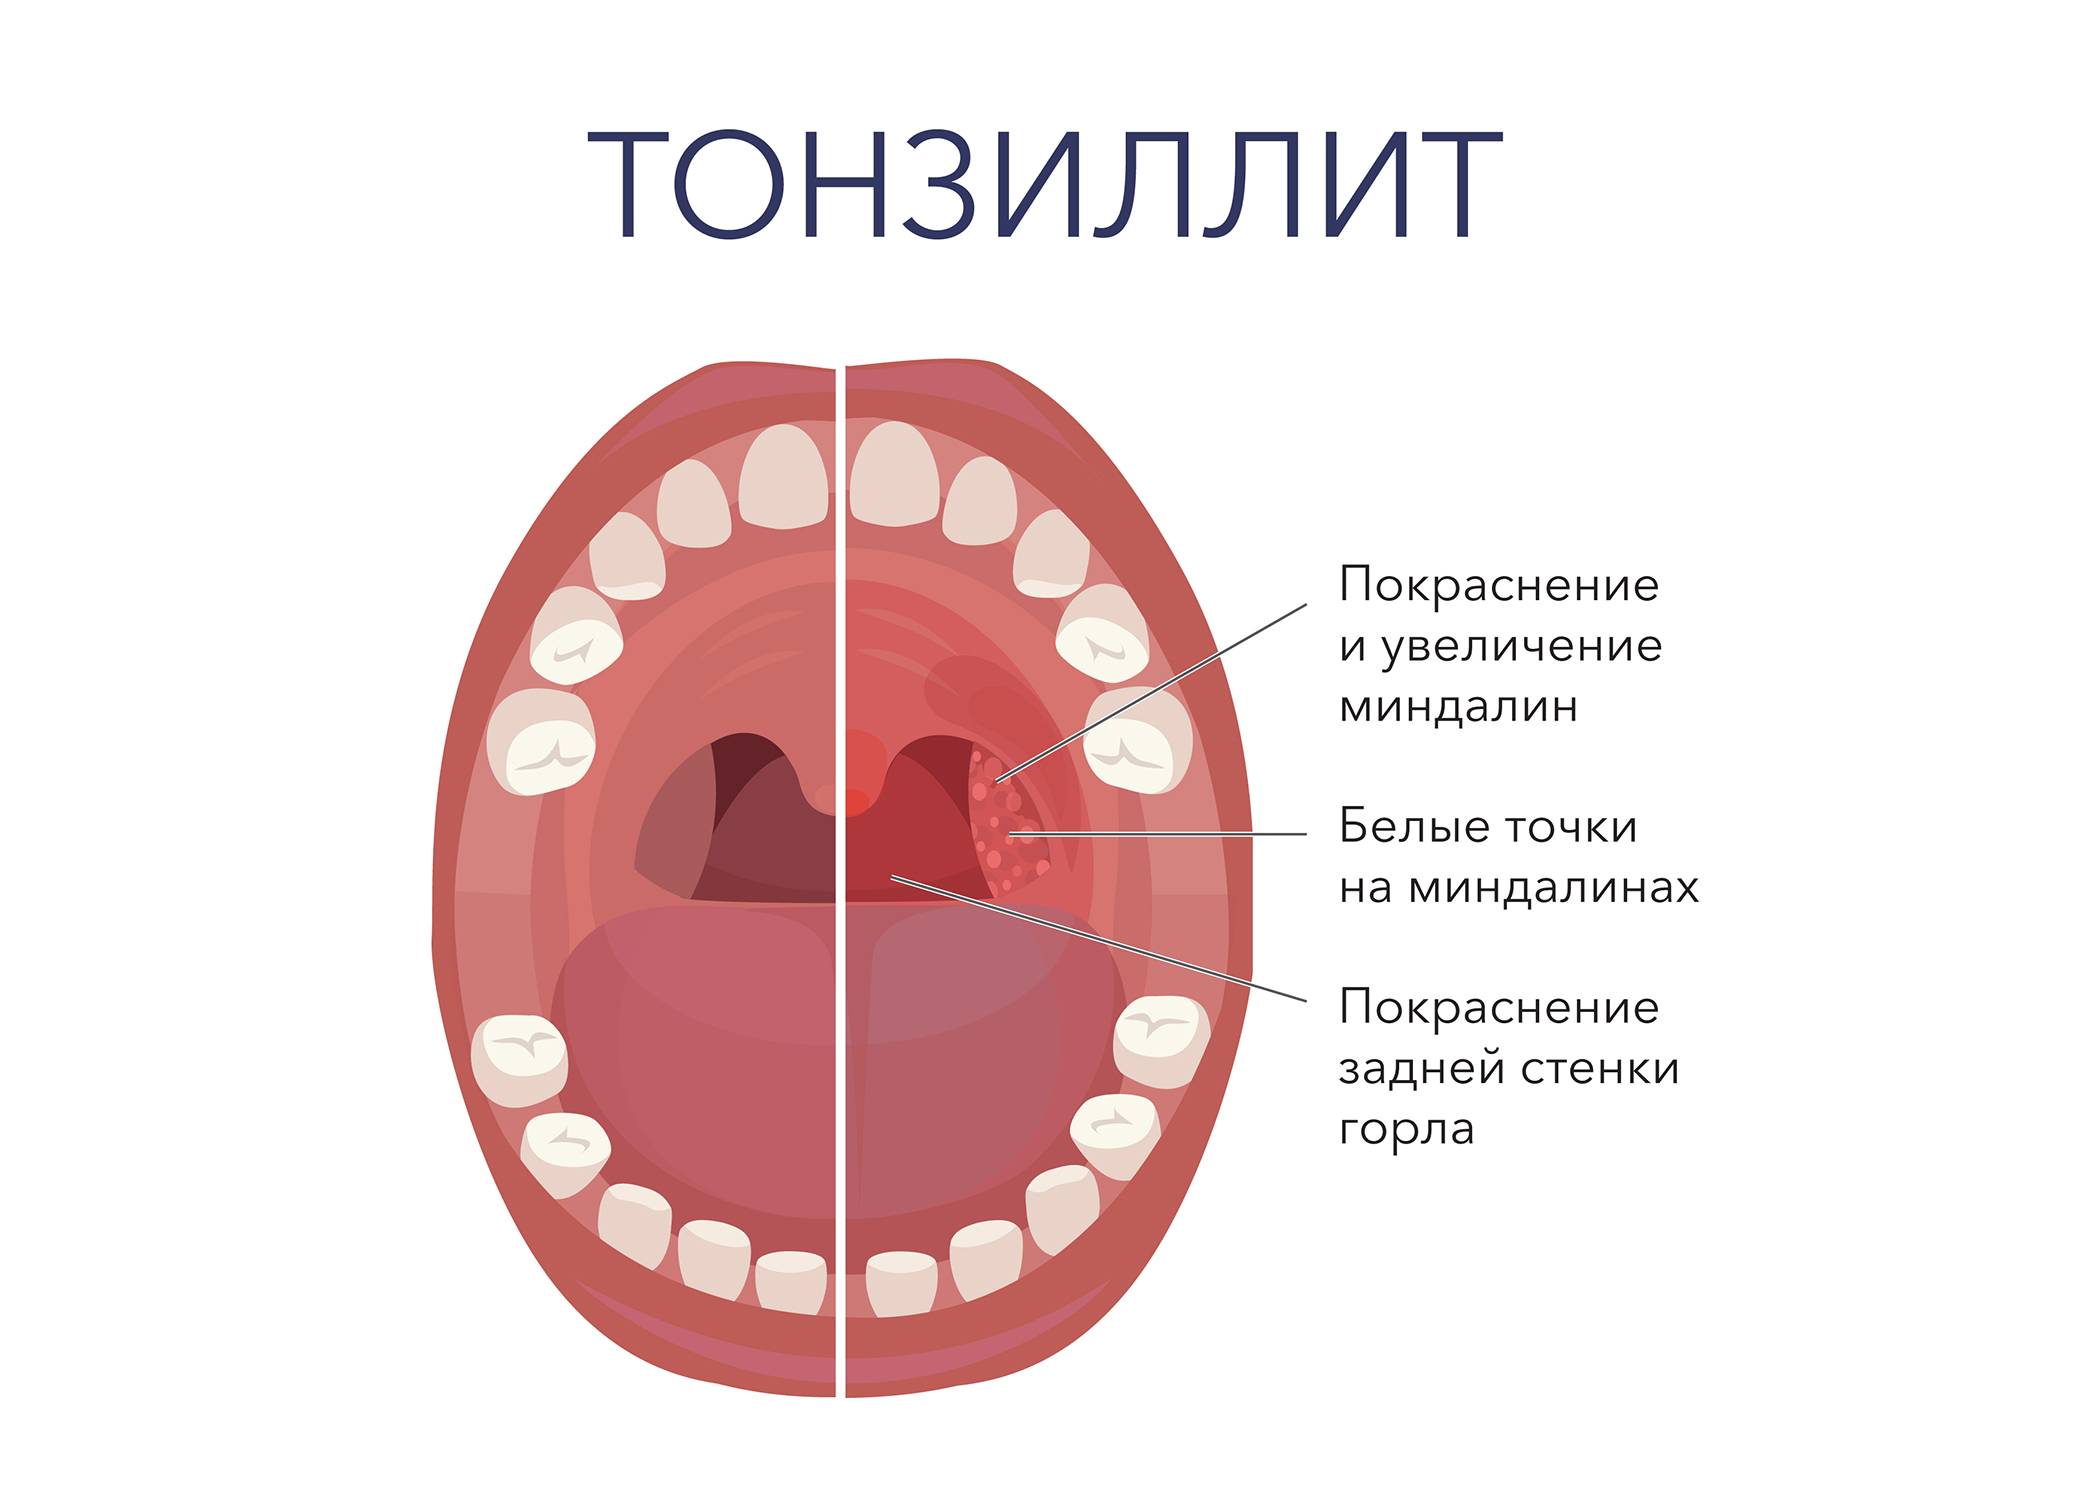 Симптомы гранулезного фарингита с фото горла, причины развития и способы лечения